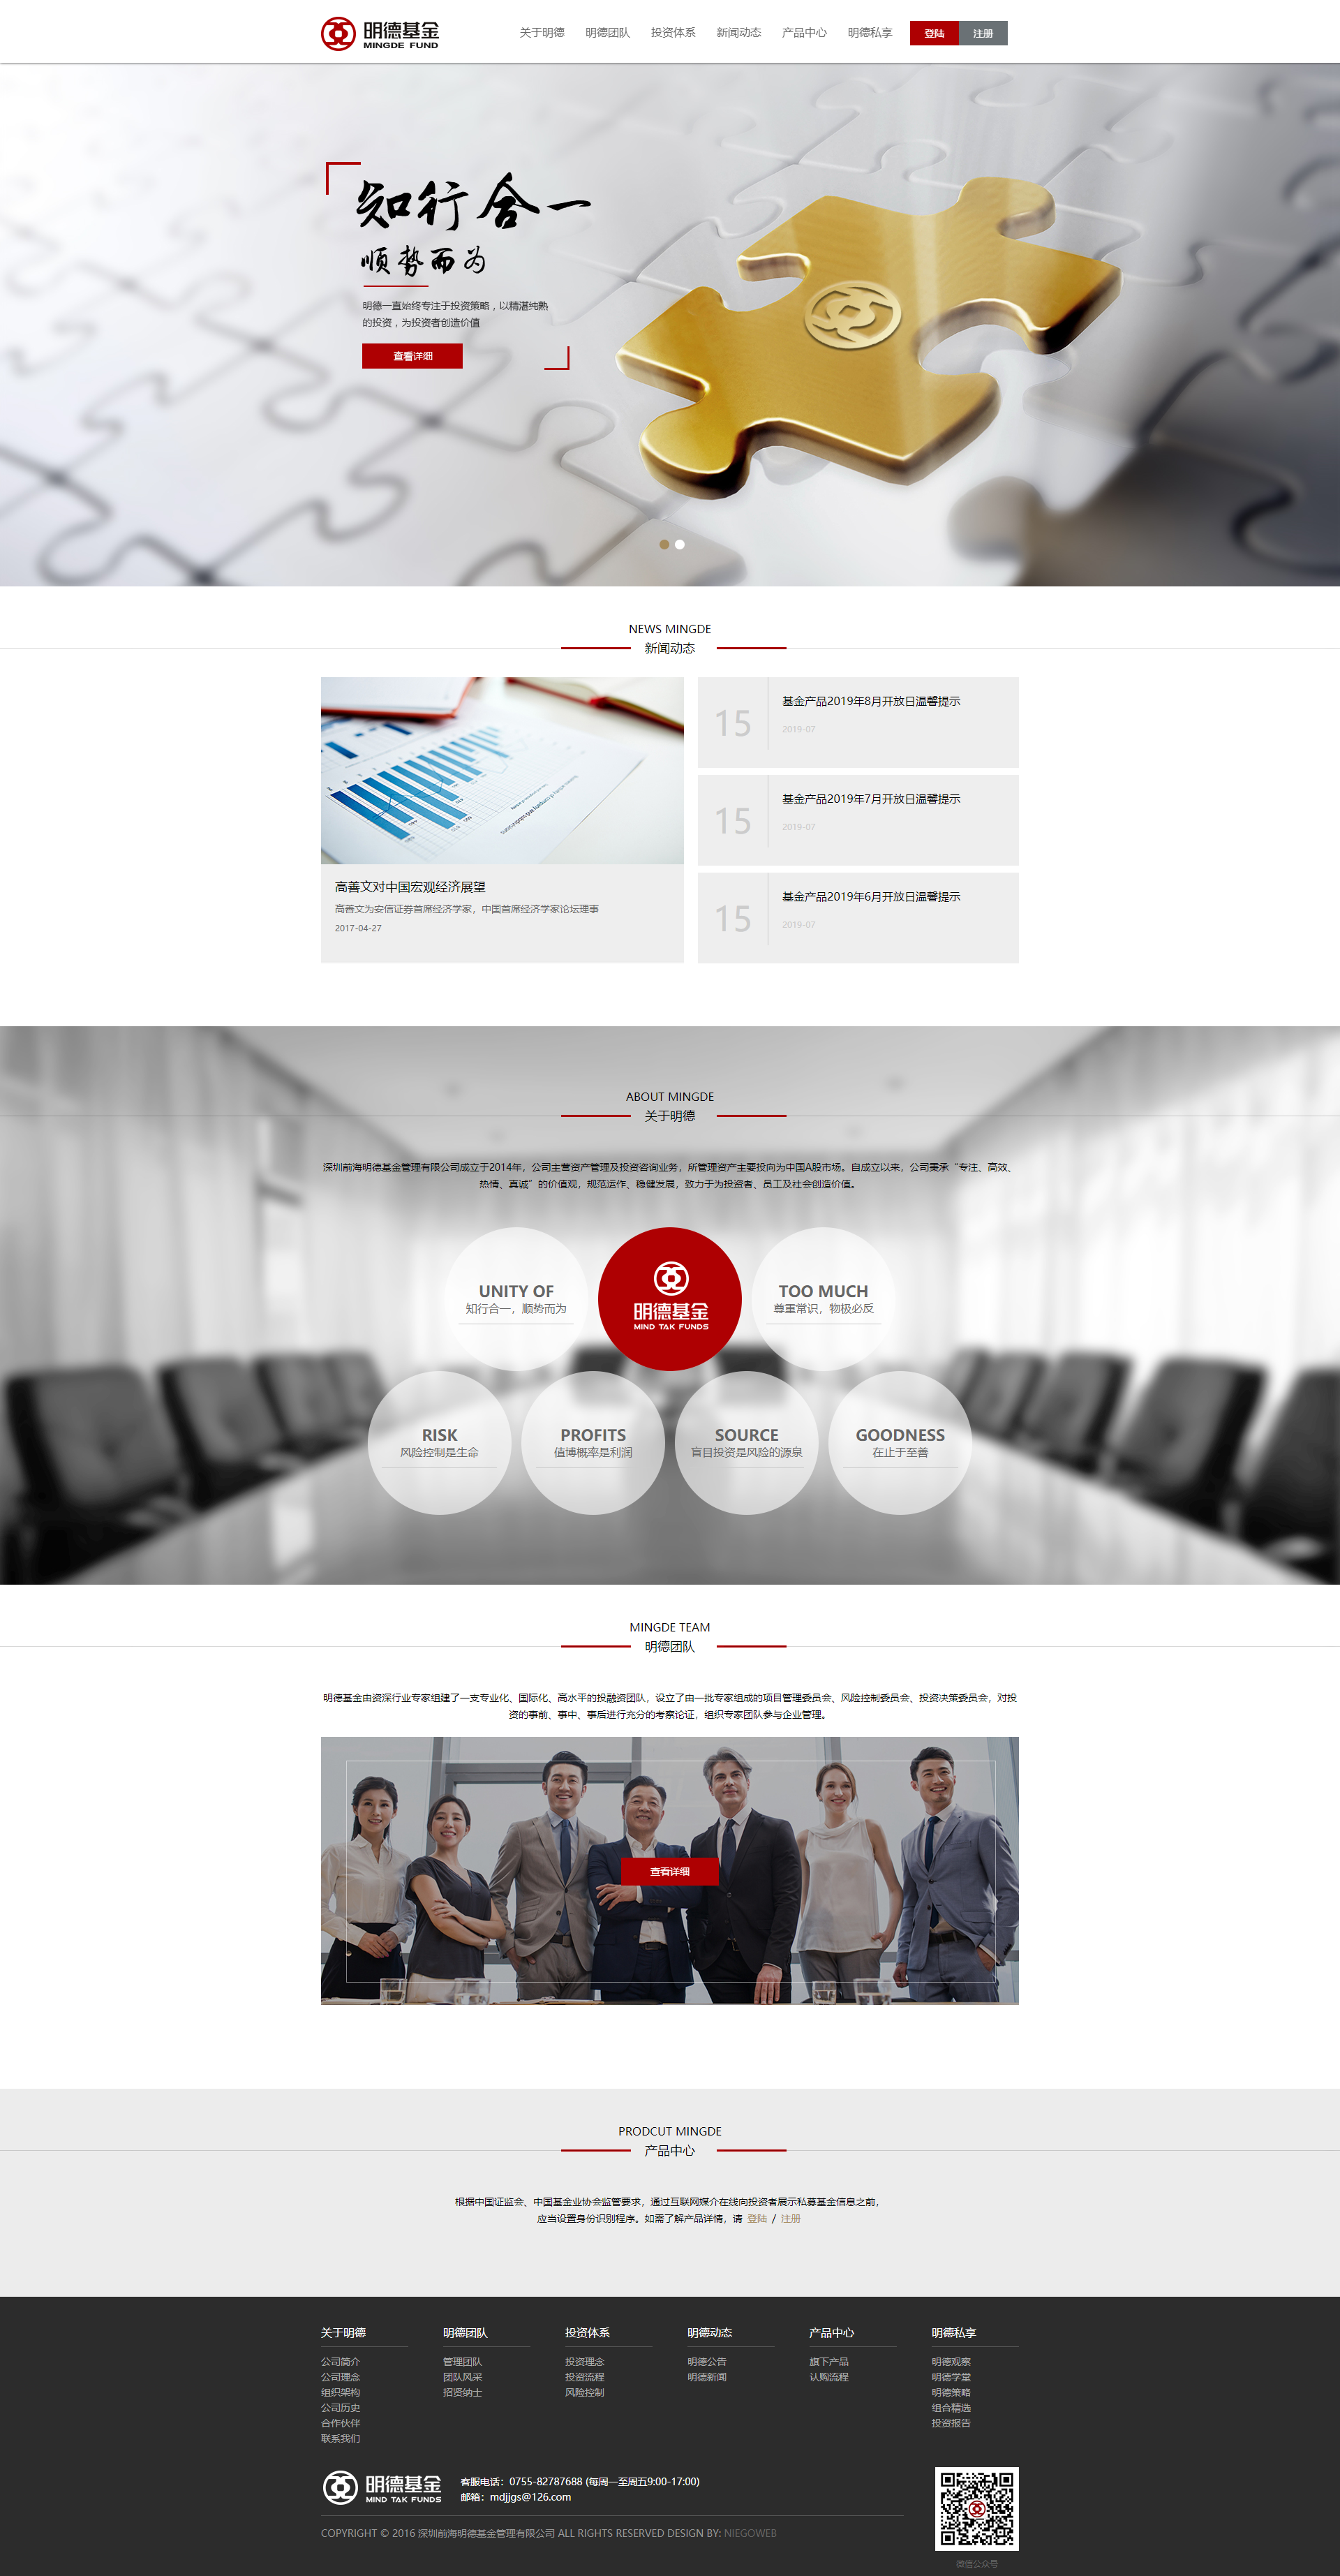 基金公司网站设计